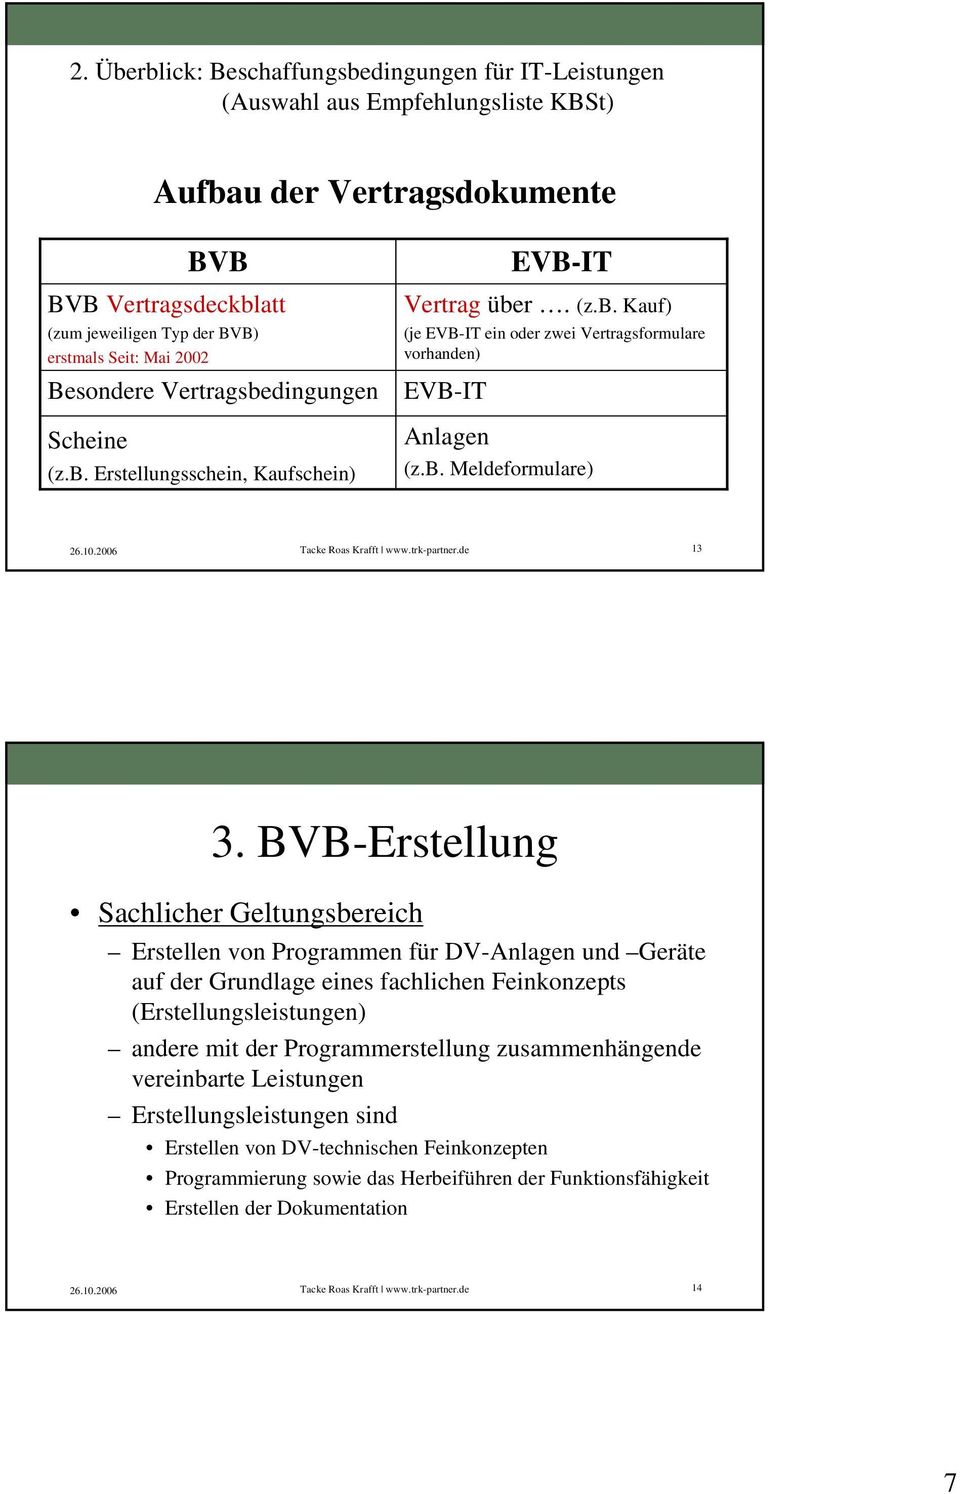 BVB-Erstellung Sachlicher Geltungsbereich Erstellen von Programmen für DV-Anlagen und Geräte auf der Grundlage eines fachlichen Feinkonzepts (Erstellungsleistungen) andere mit der Programmerstellung